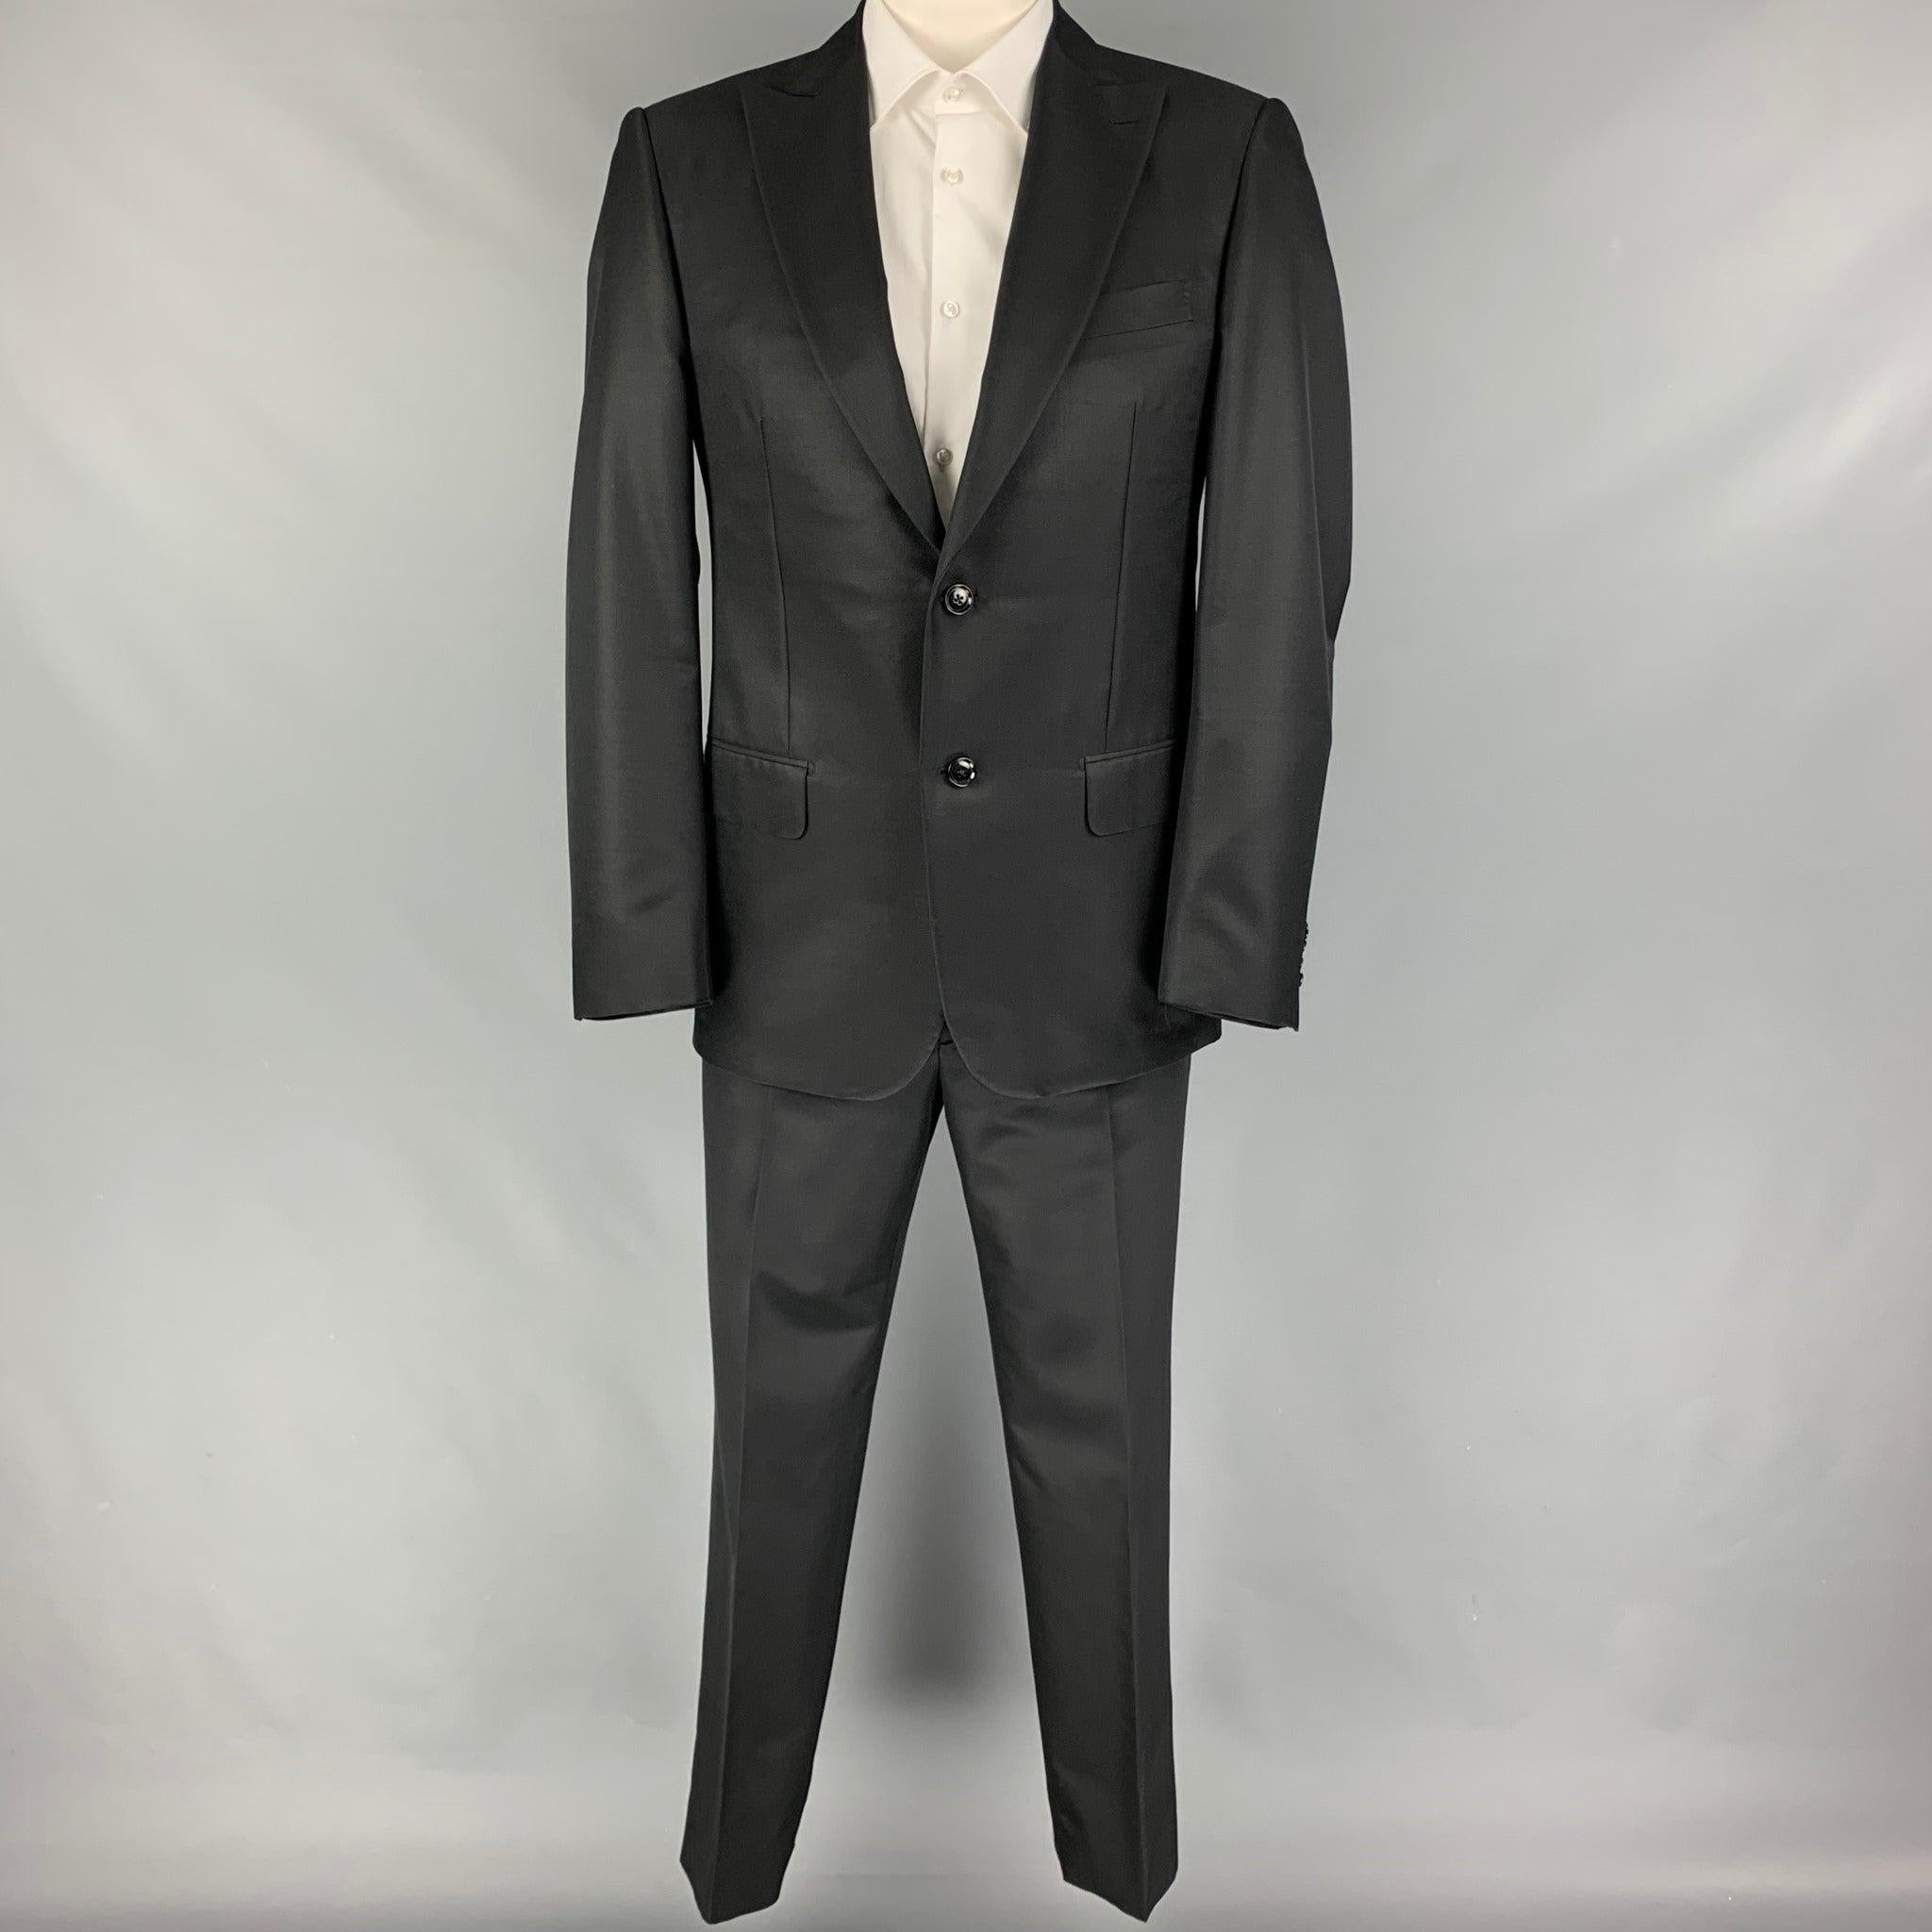 Der Anzug PAL ZILERI ist aus schwarzer Wolle/Seide mit Vollfutter und besteht aus einem einreihigen Sportmantel mit Spitzrevers und einer passenden Hose mit flacher Front. Hergestellt in Italien. Sehr guter gebrauchter Zustand. 

Markiert:   50